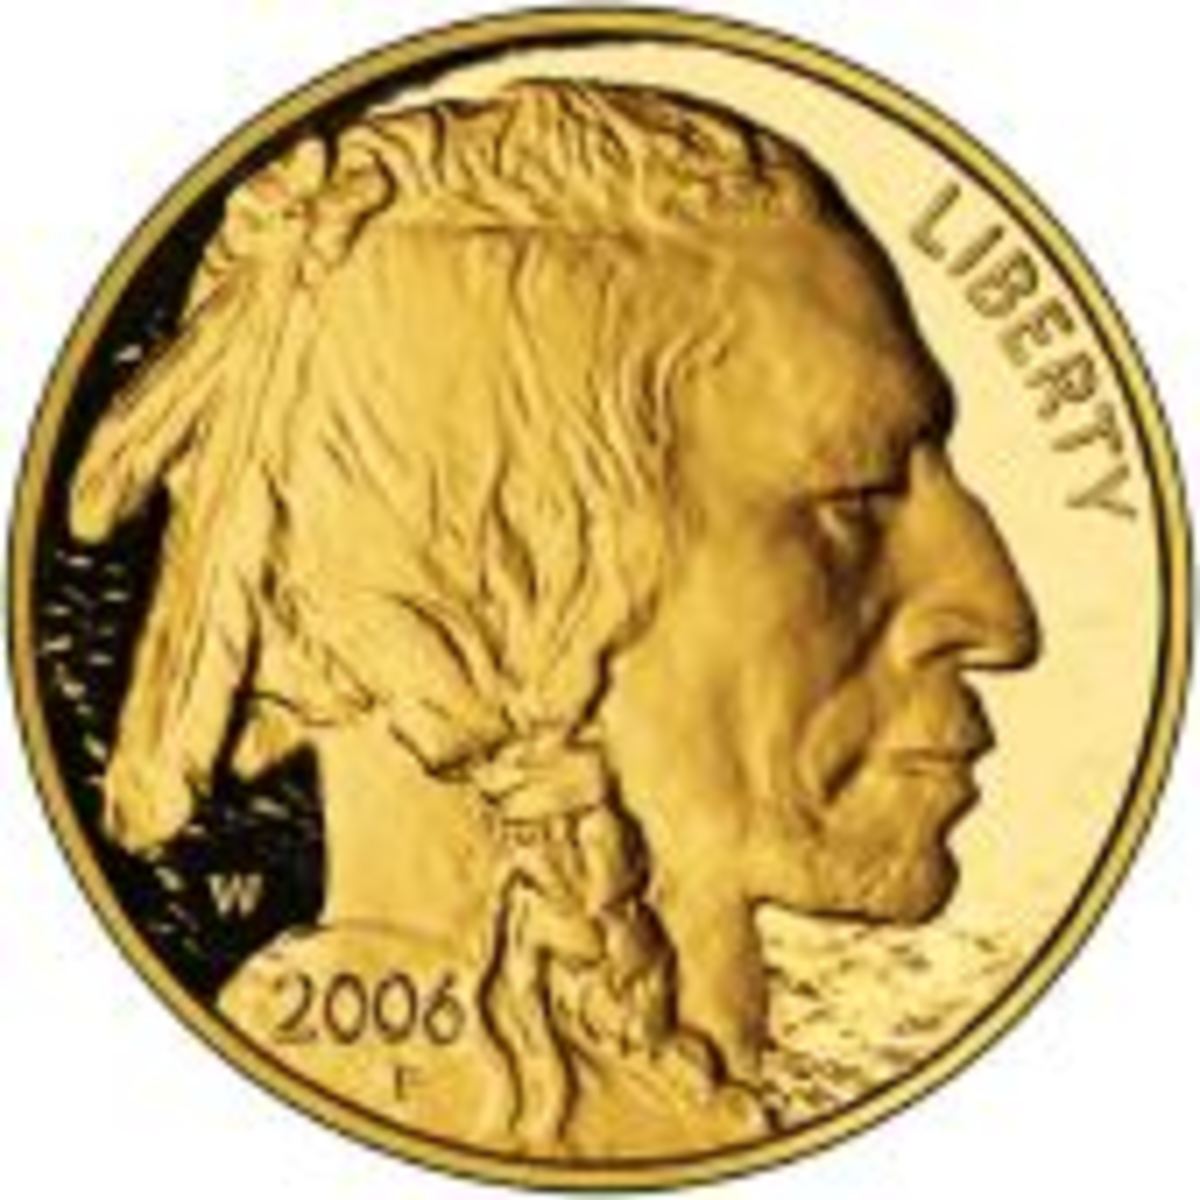 American Buffalo gold coin